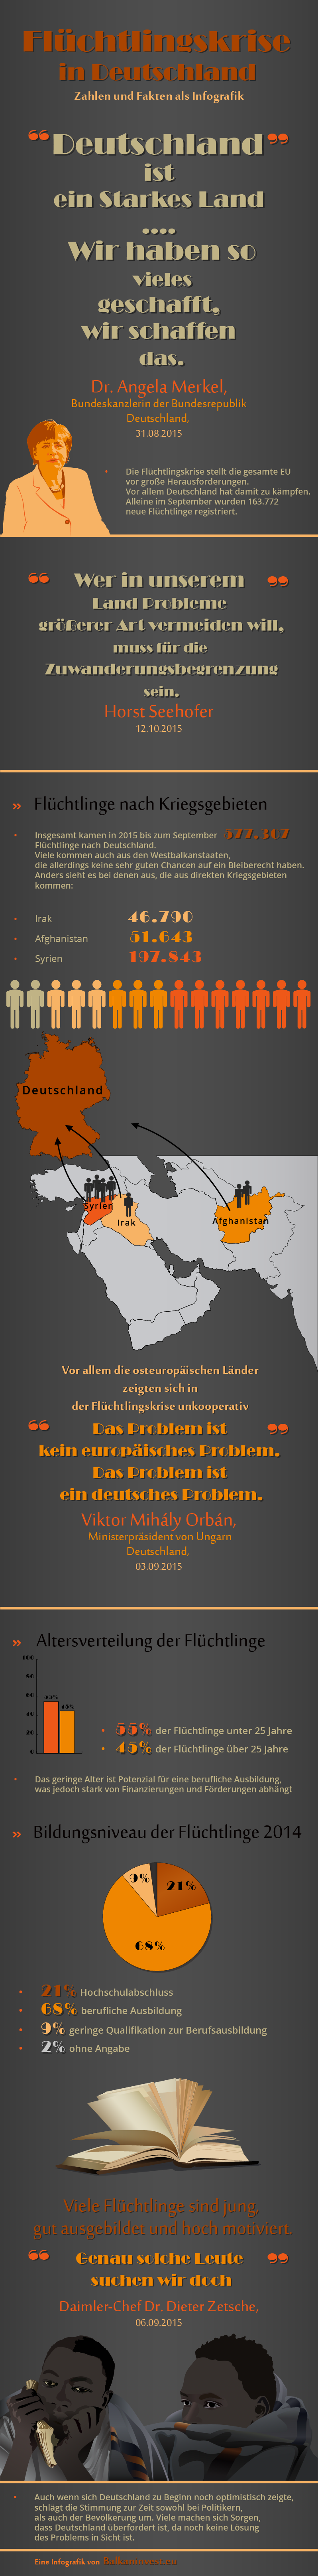 Infografik zur Flüchtlingskrise in Deutschland 2015